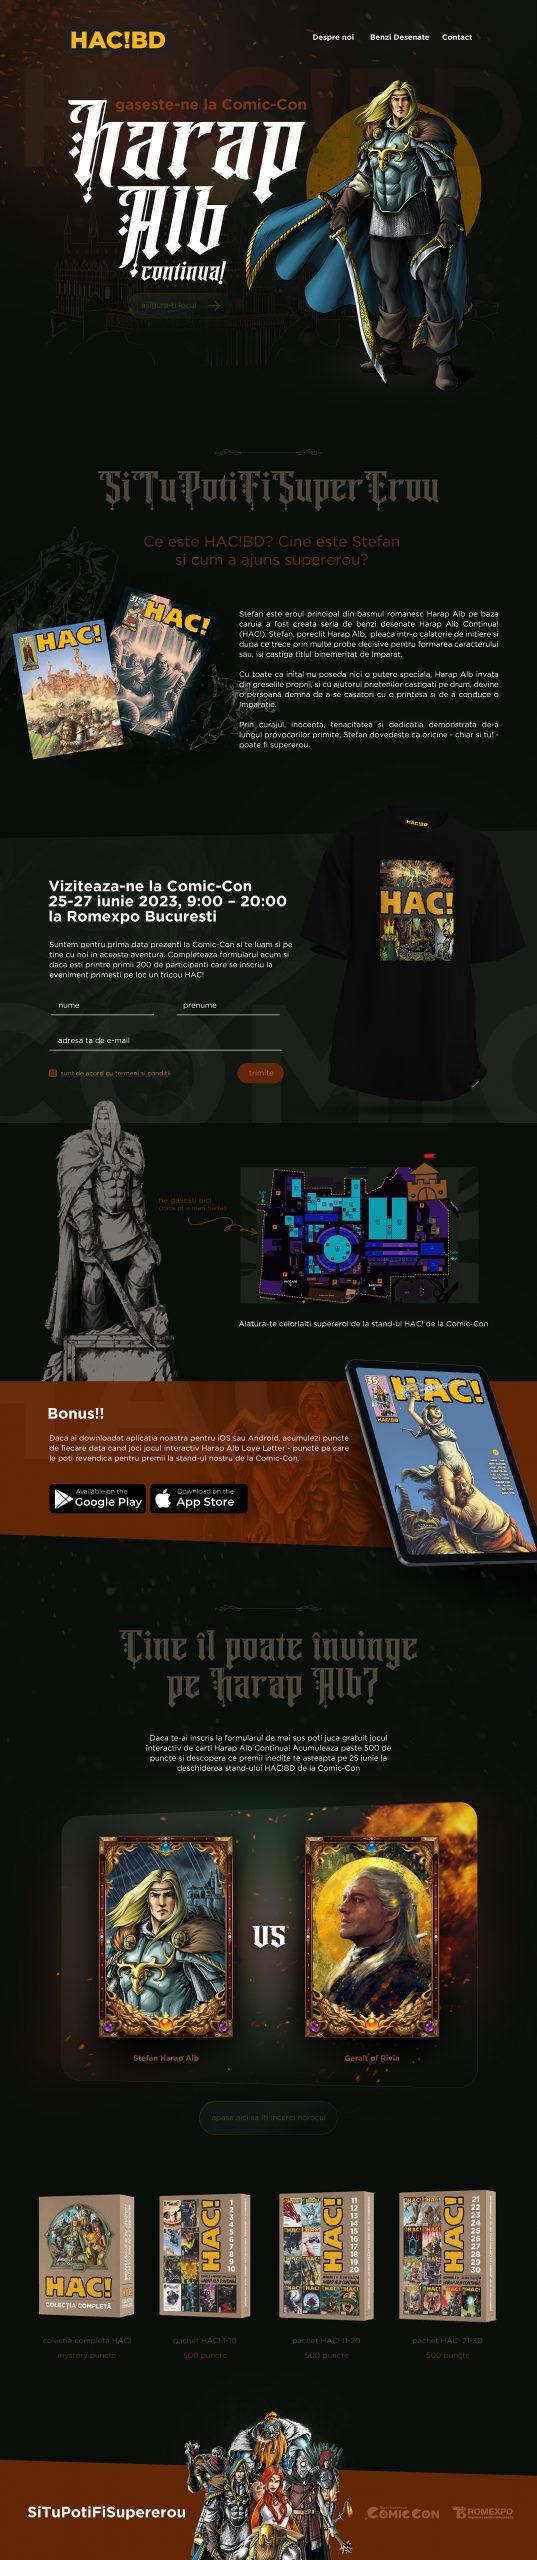 Harap Alb Continua! HAC!BD at Comic Con Landing Page UI/UX Design